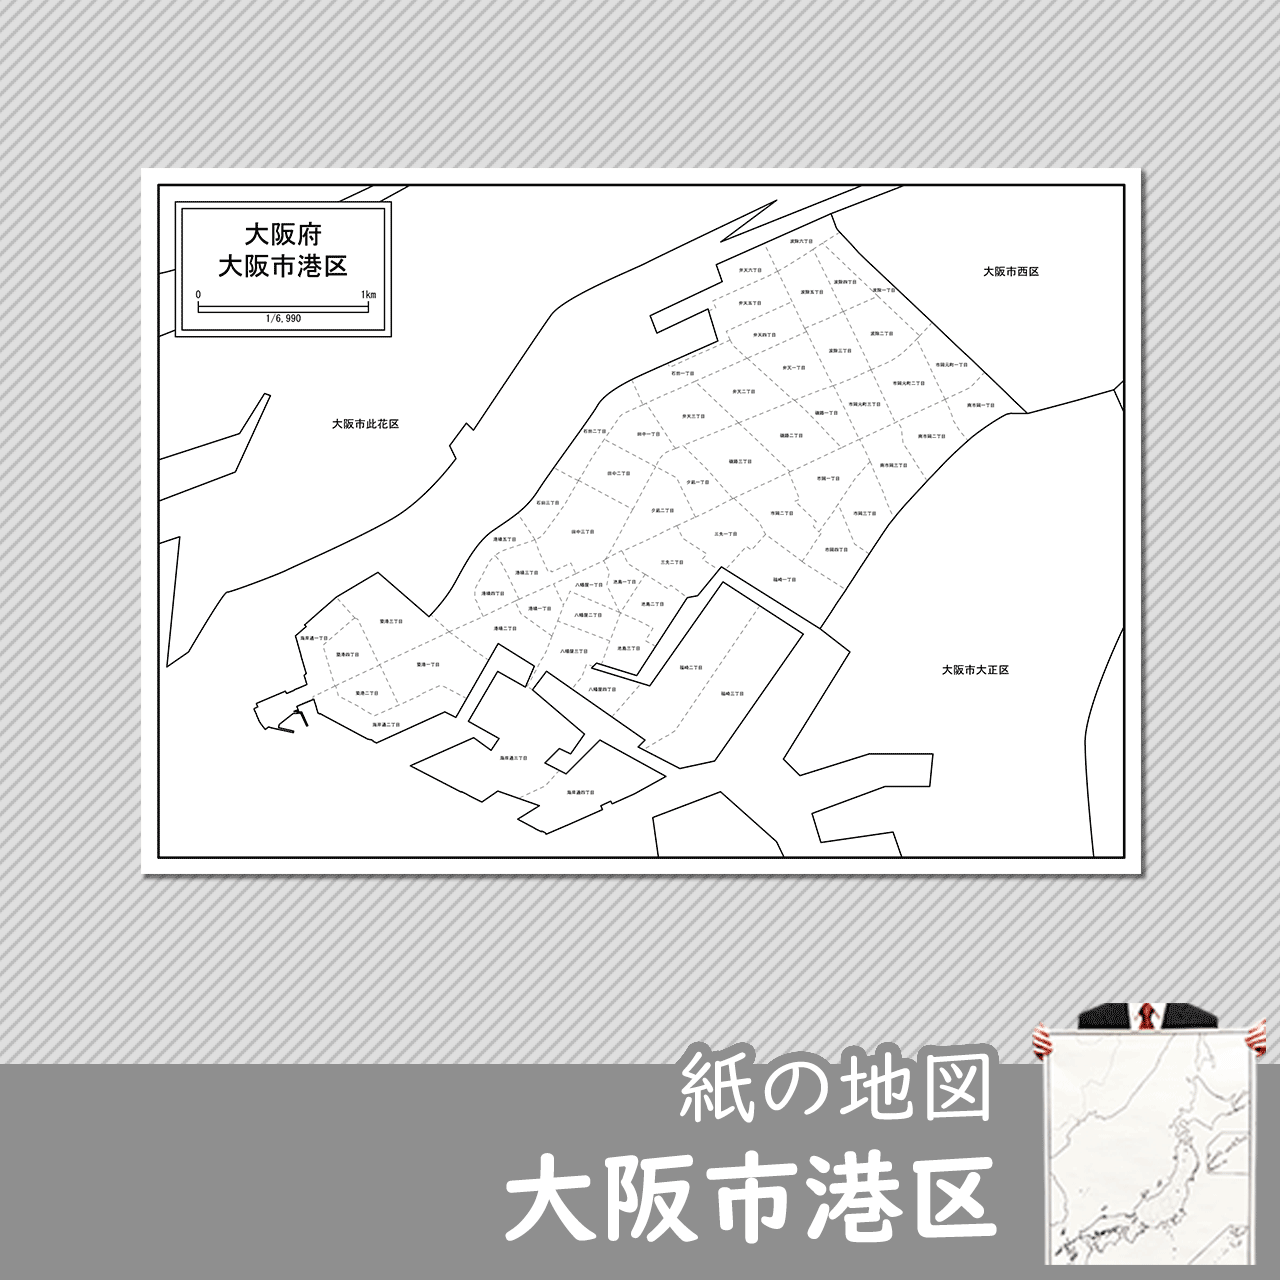 大阪市港区の紙の白地図